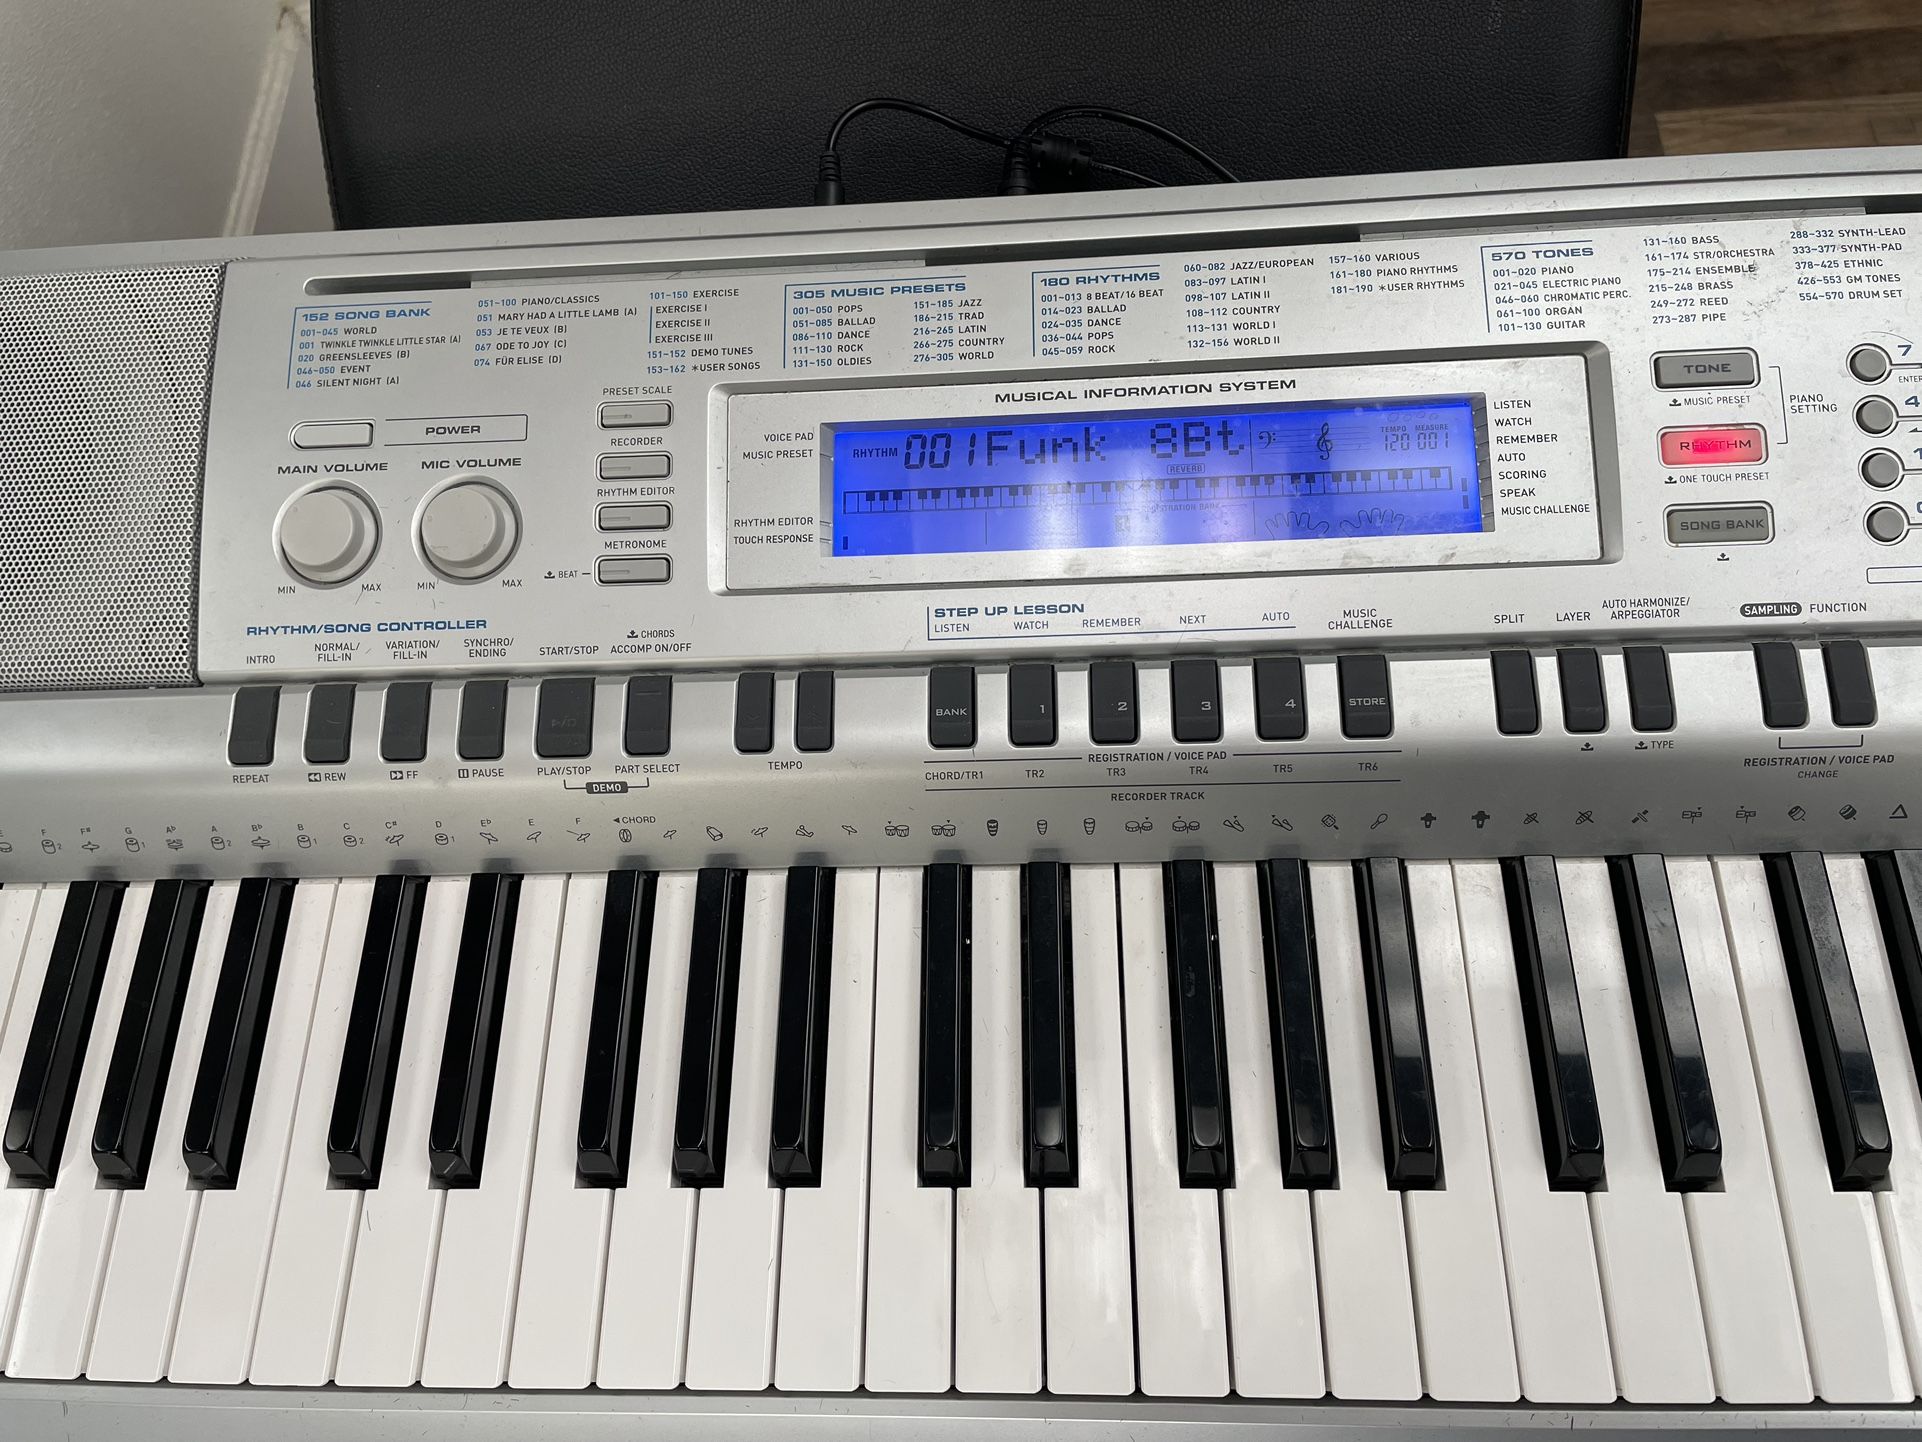 Piano Keyboard Casio Wk -210